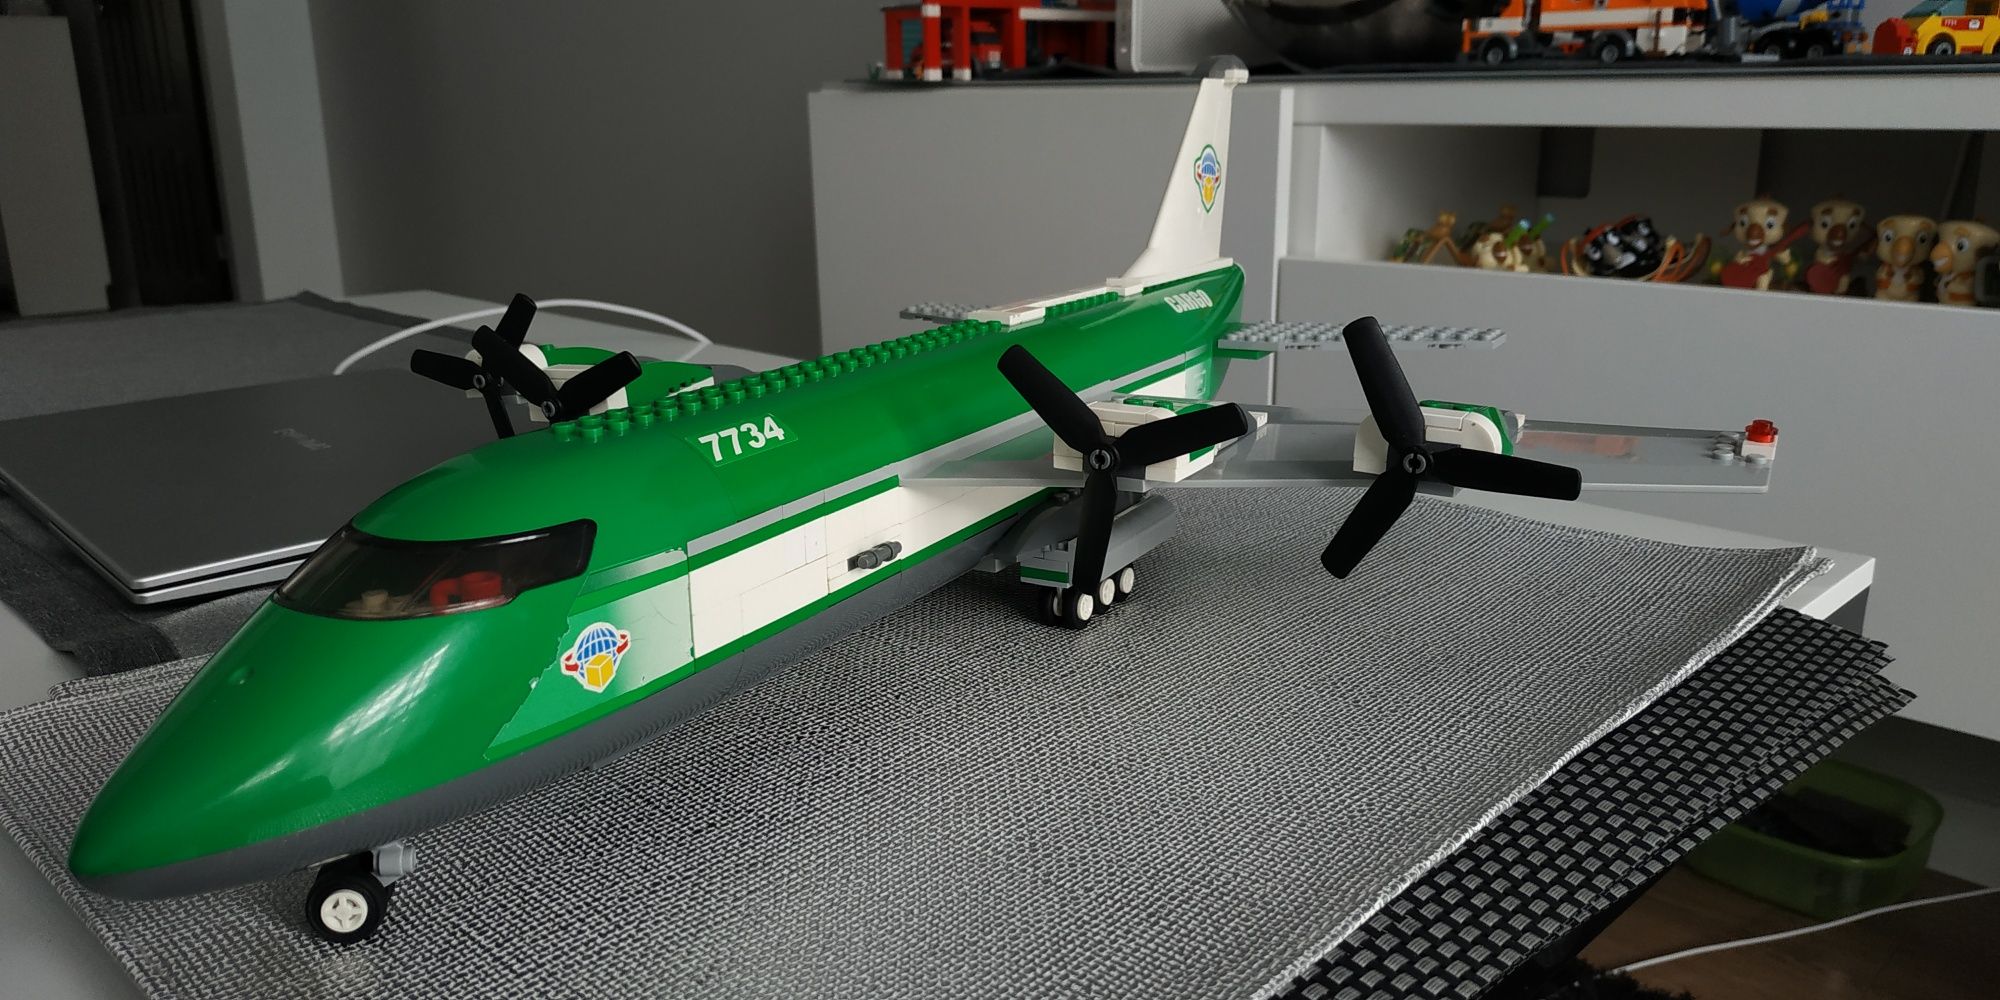 LEGO City Samolot wózek zestaw klocki dla dzieci UNIKAT